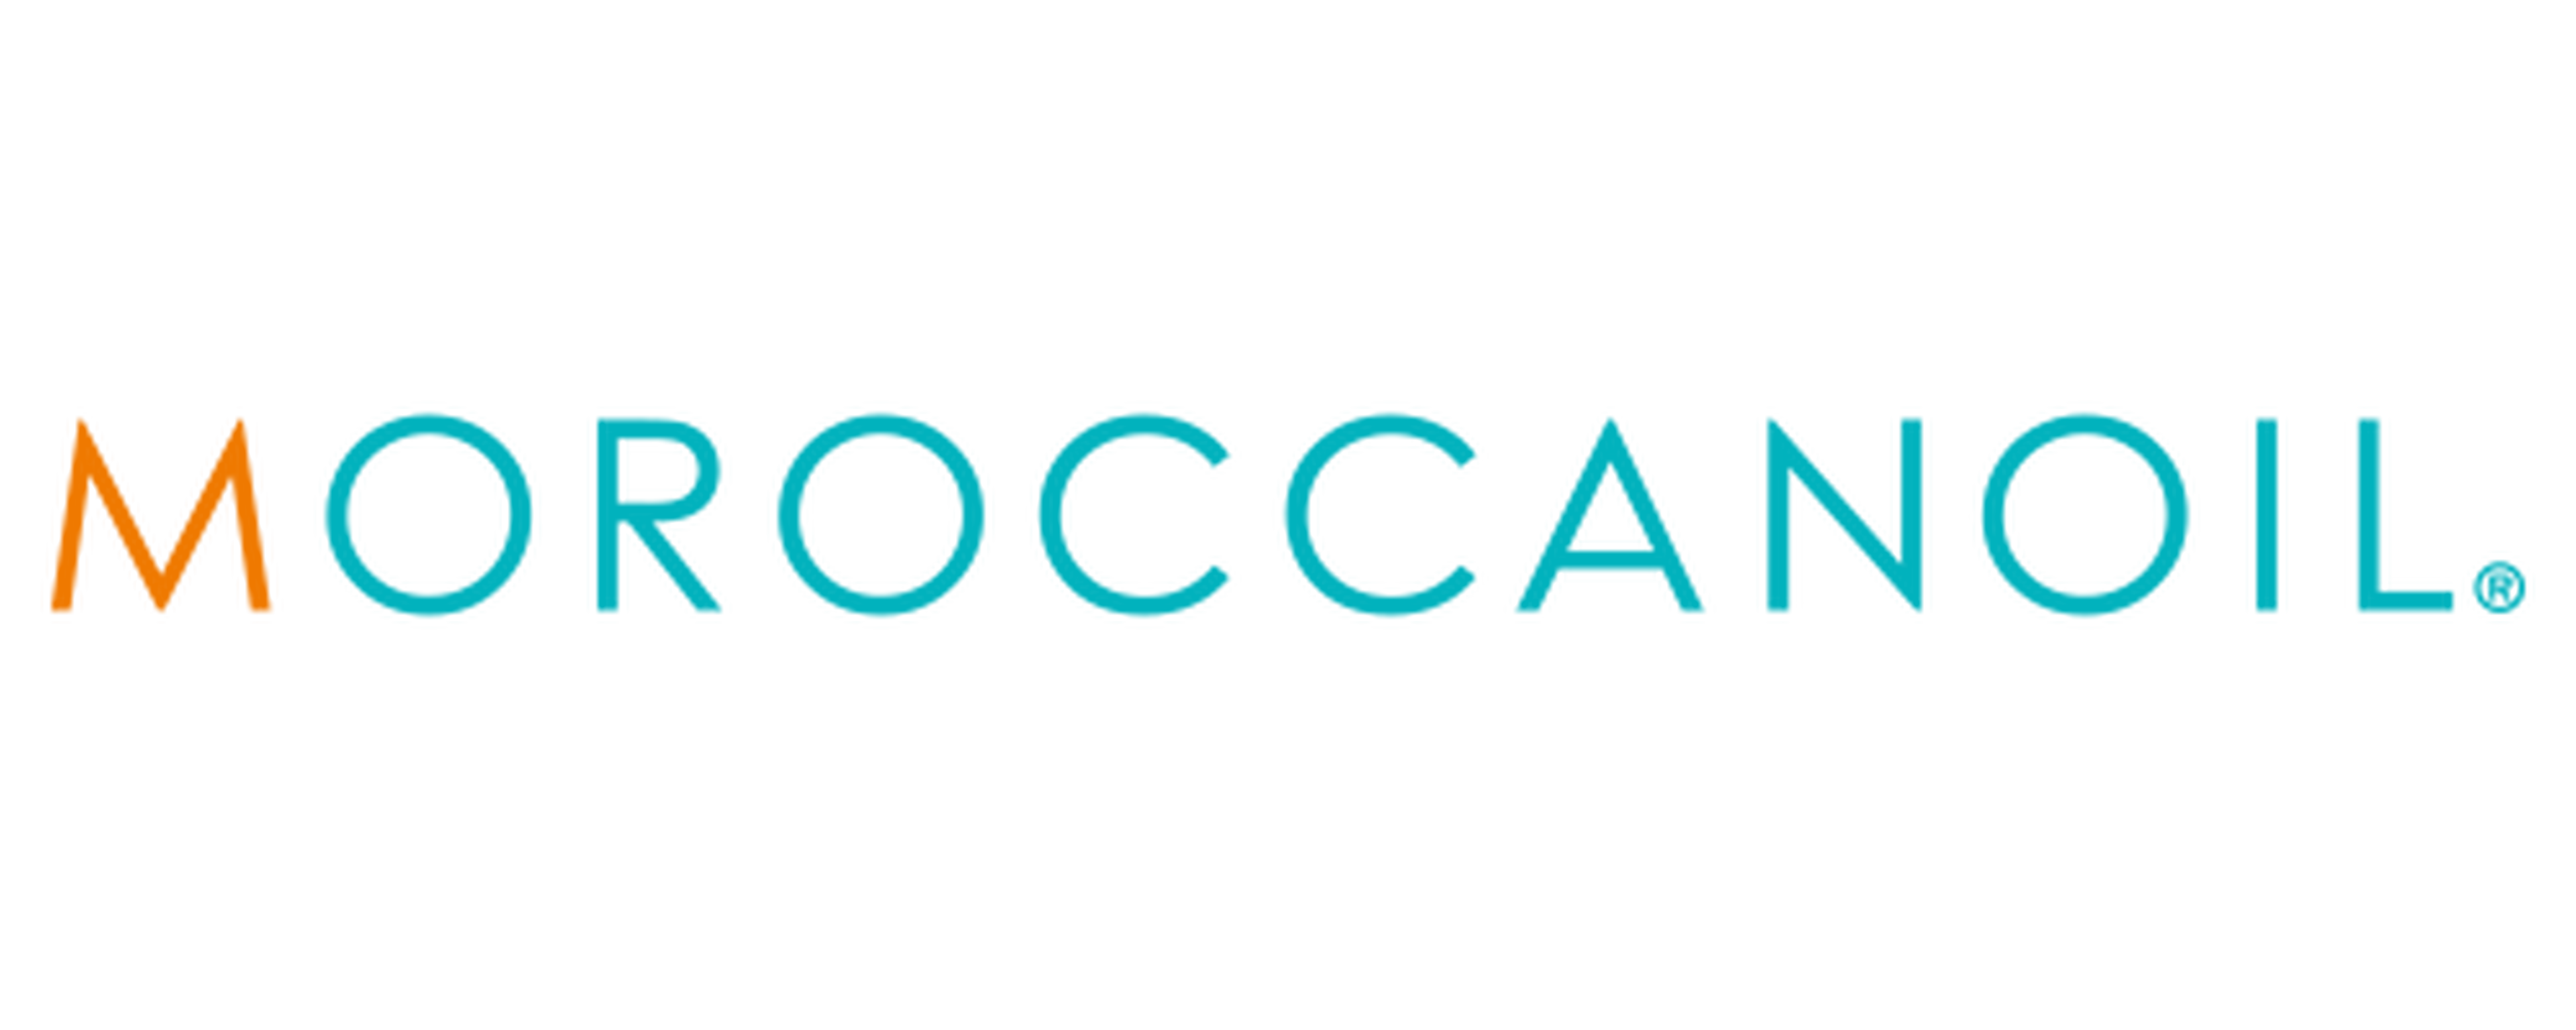 Moroccanoil logotype